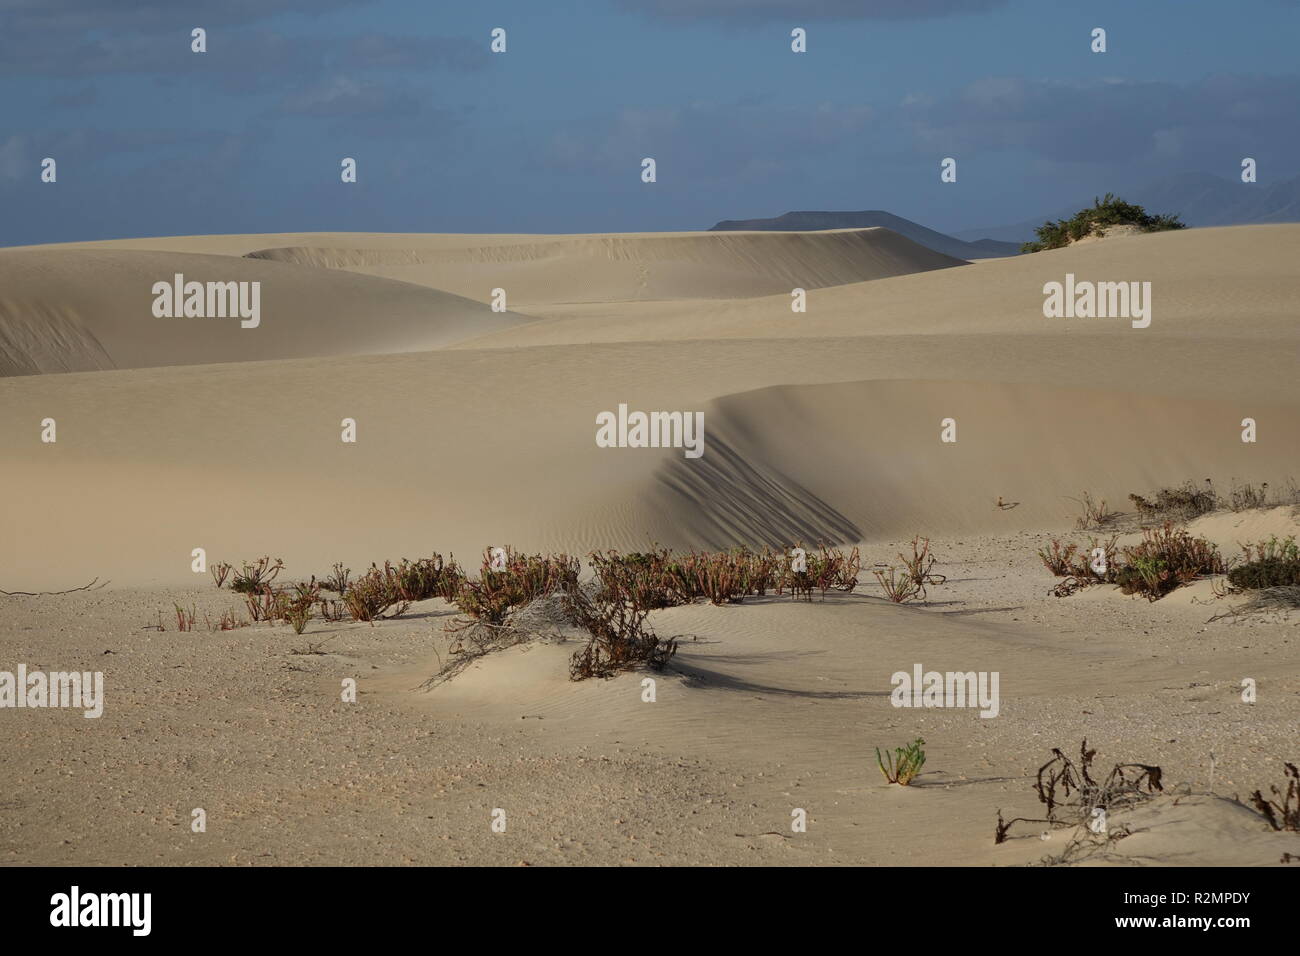 En fin d'après-midi, soleil bas, afficher les textures et les motifs dans le sable dans le parc naturel de Corralejo, Fuerteventura, Canary-Islands,,Espagne. Banque D'Images